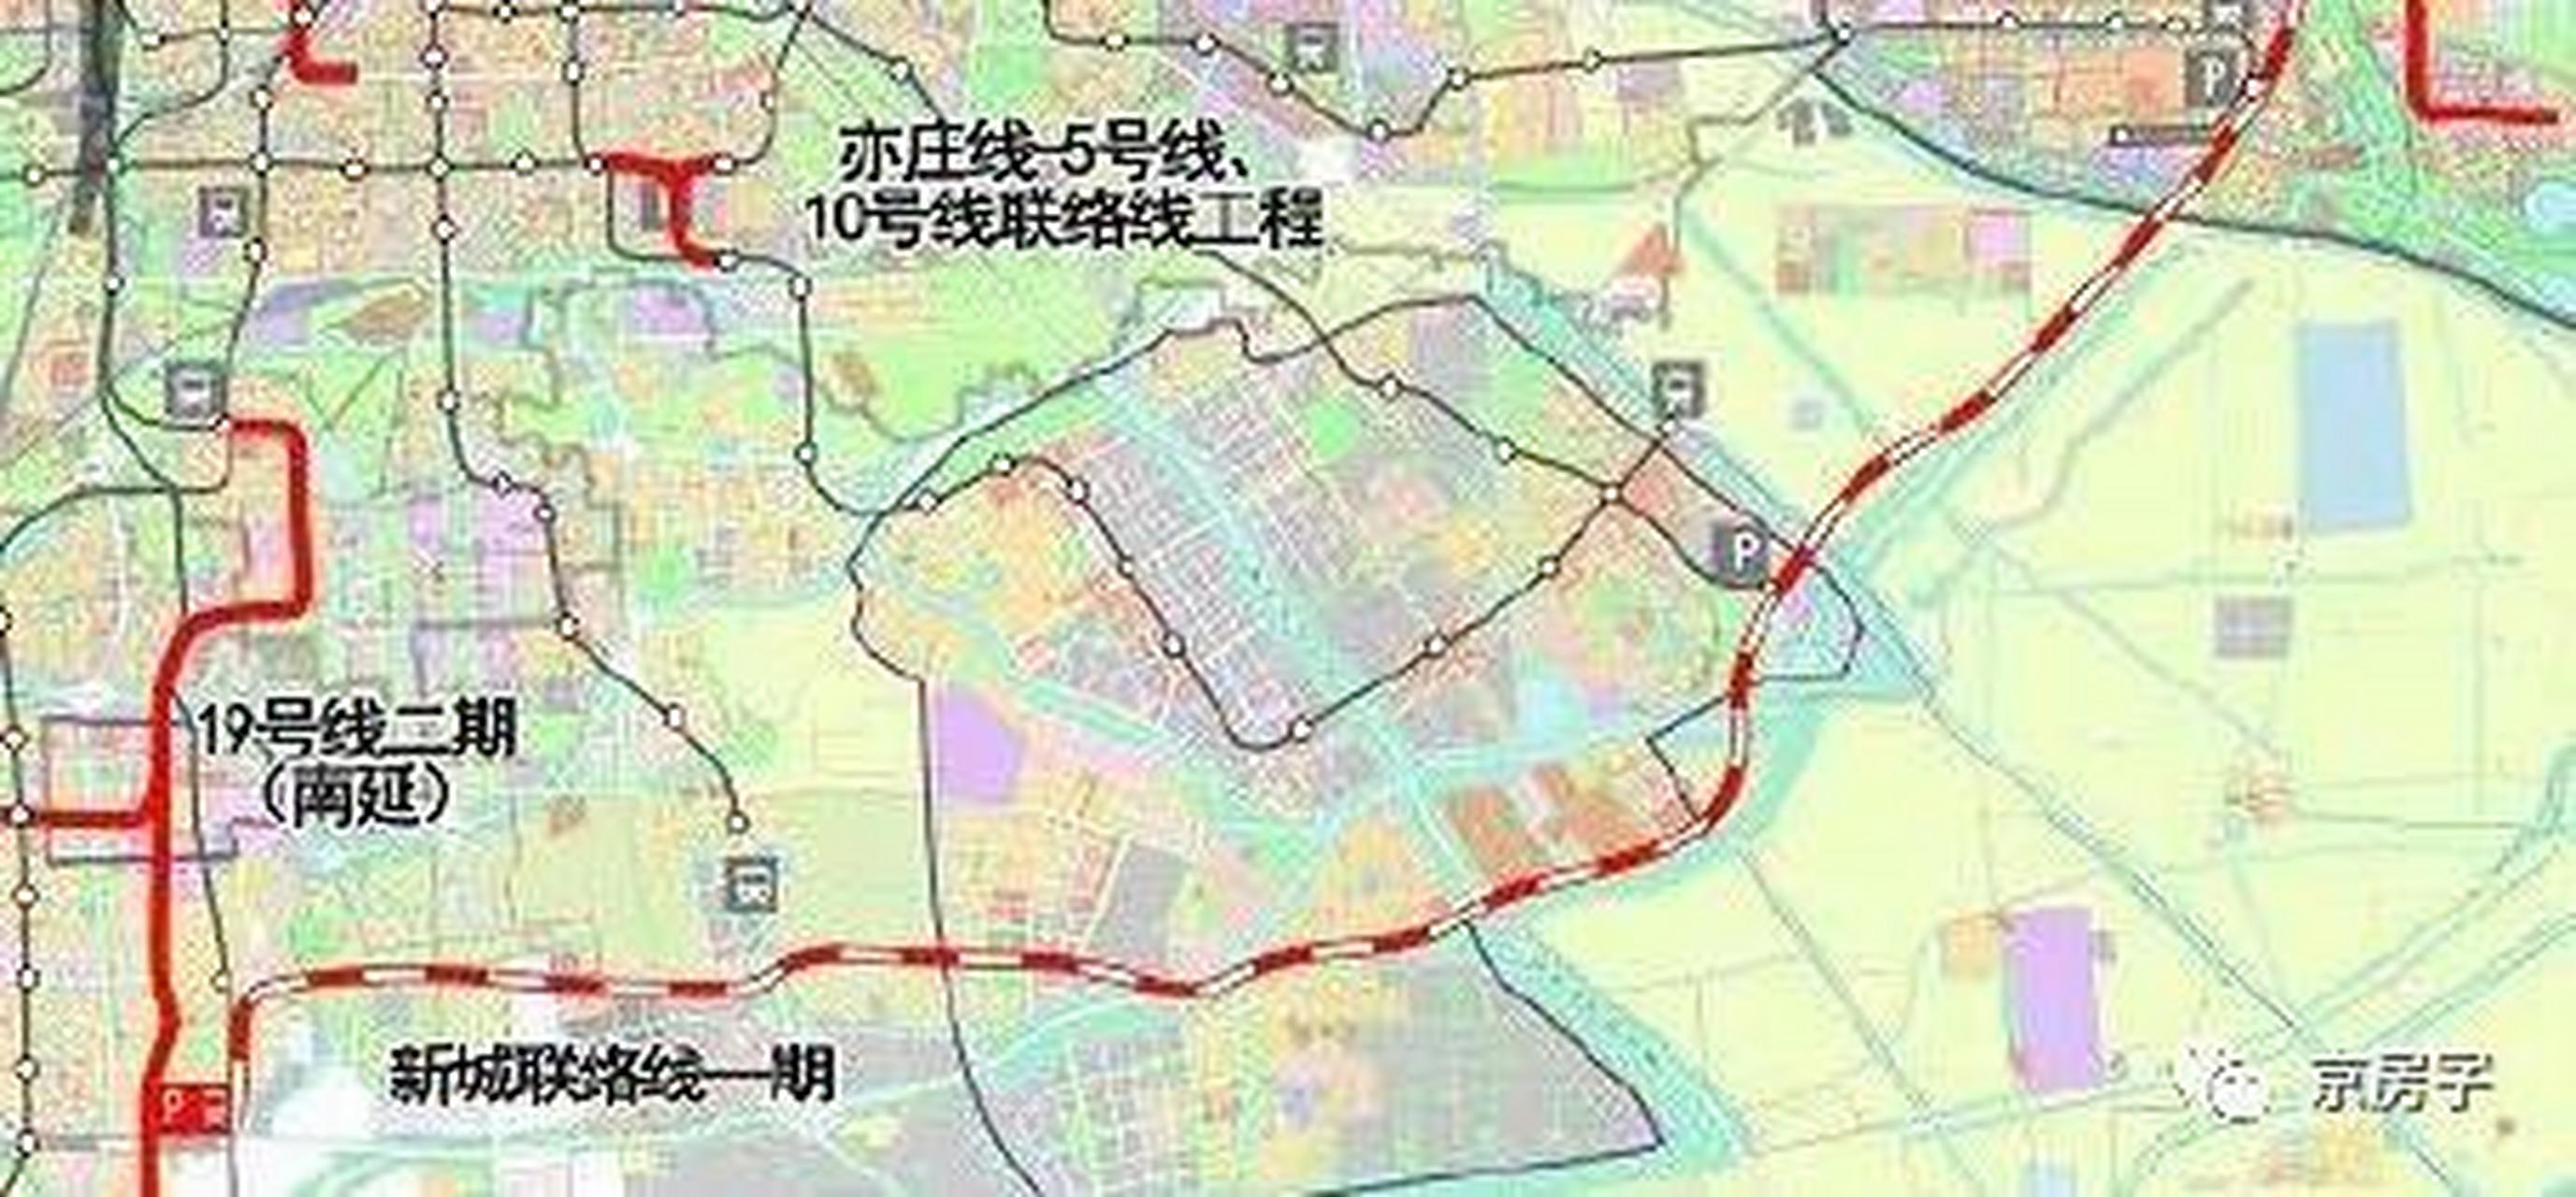 北京s6线地铁线路图图片